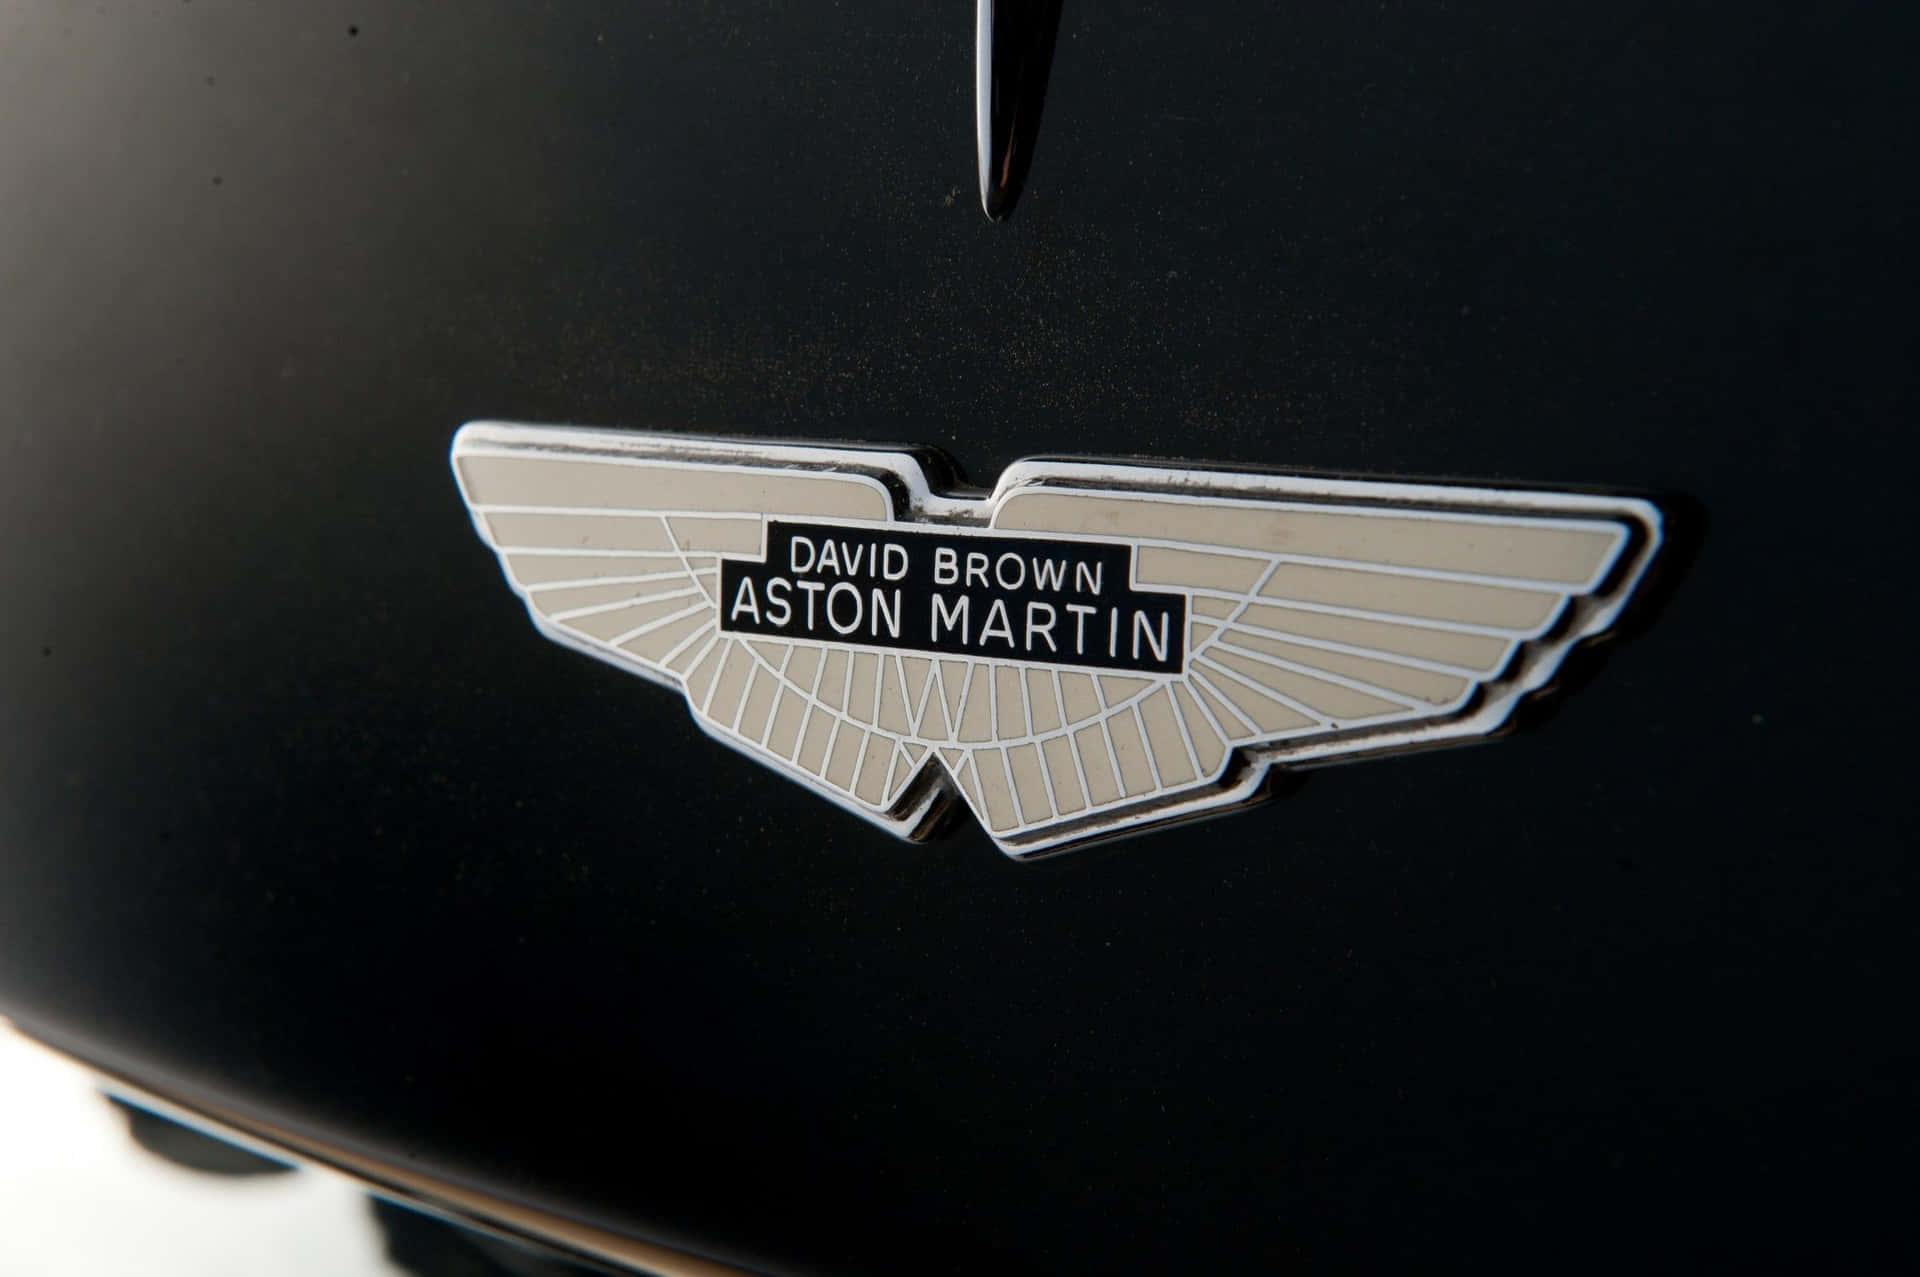 Astonmartin Db9 - Aston Martin Db9 - Aston Martin Db9